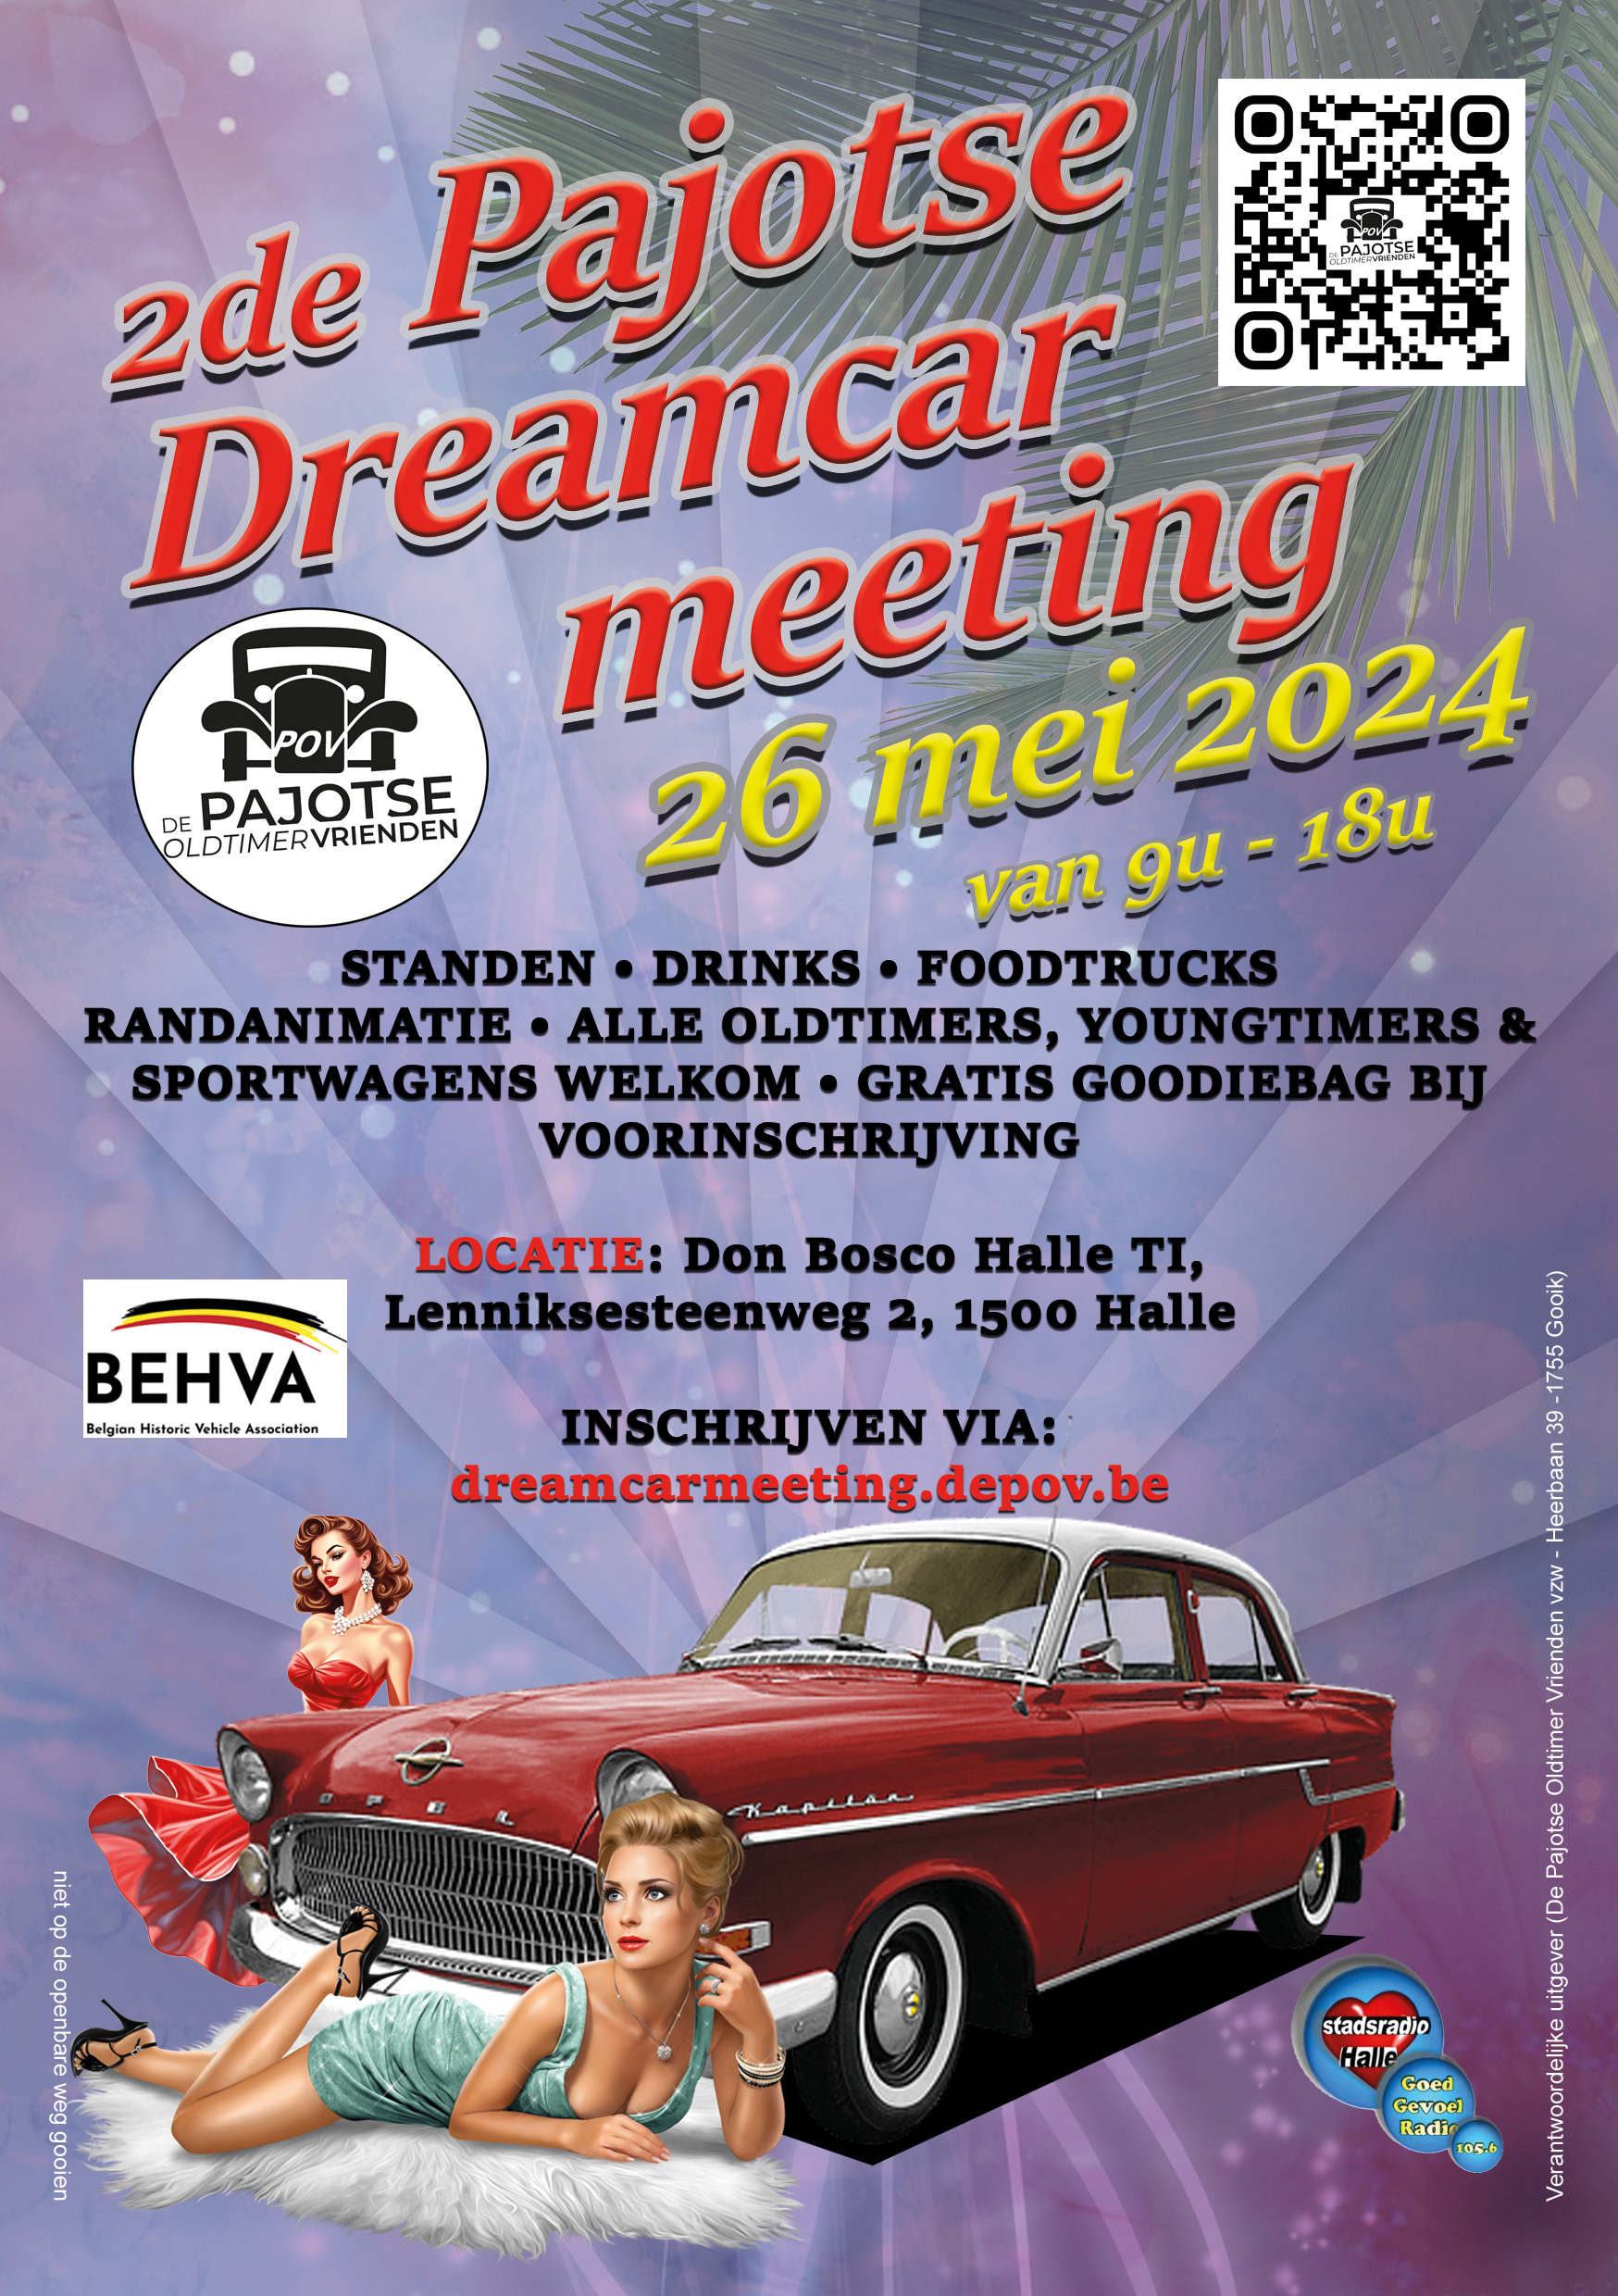 Flyer de pajotse dreamcar meeting (Standen, drinks, foodtrucks, randanimatie, gratis goodiebag bij voorinschrijving)